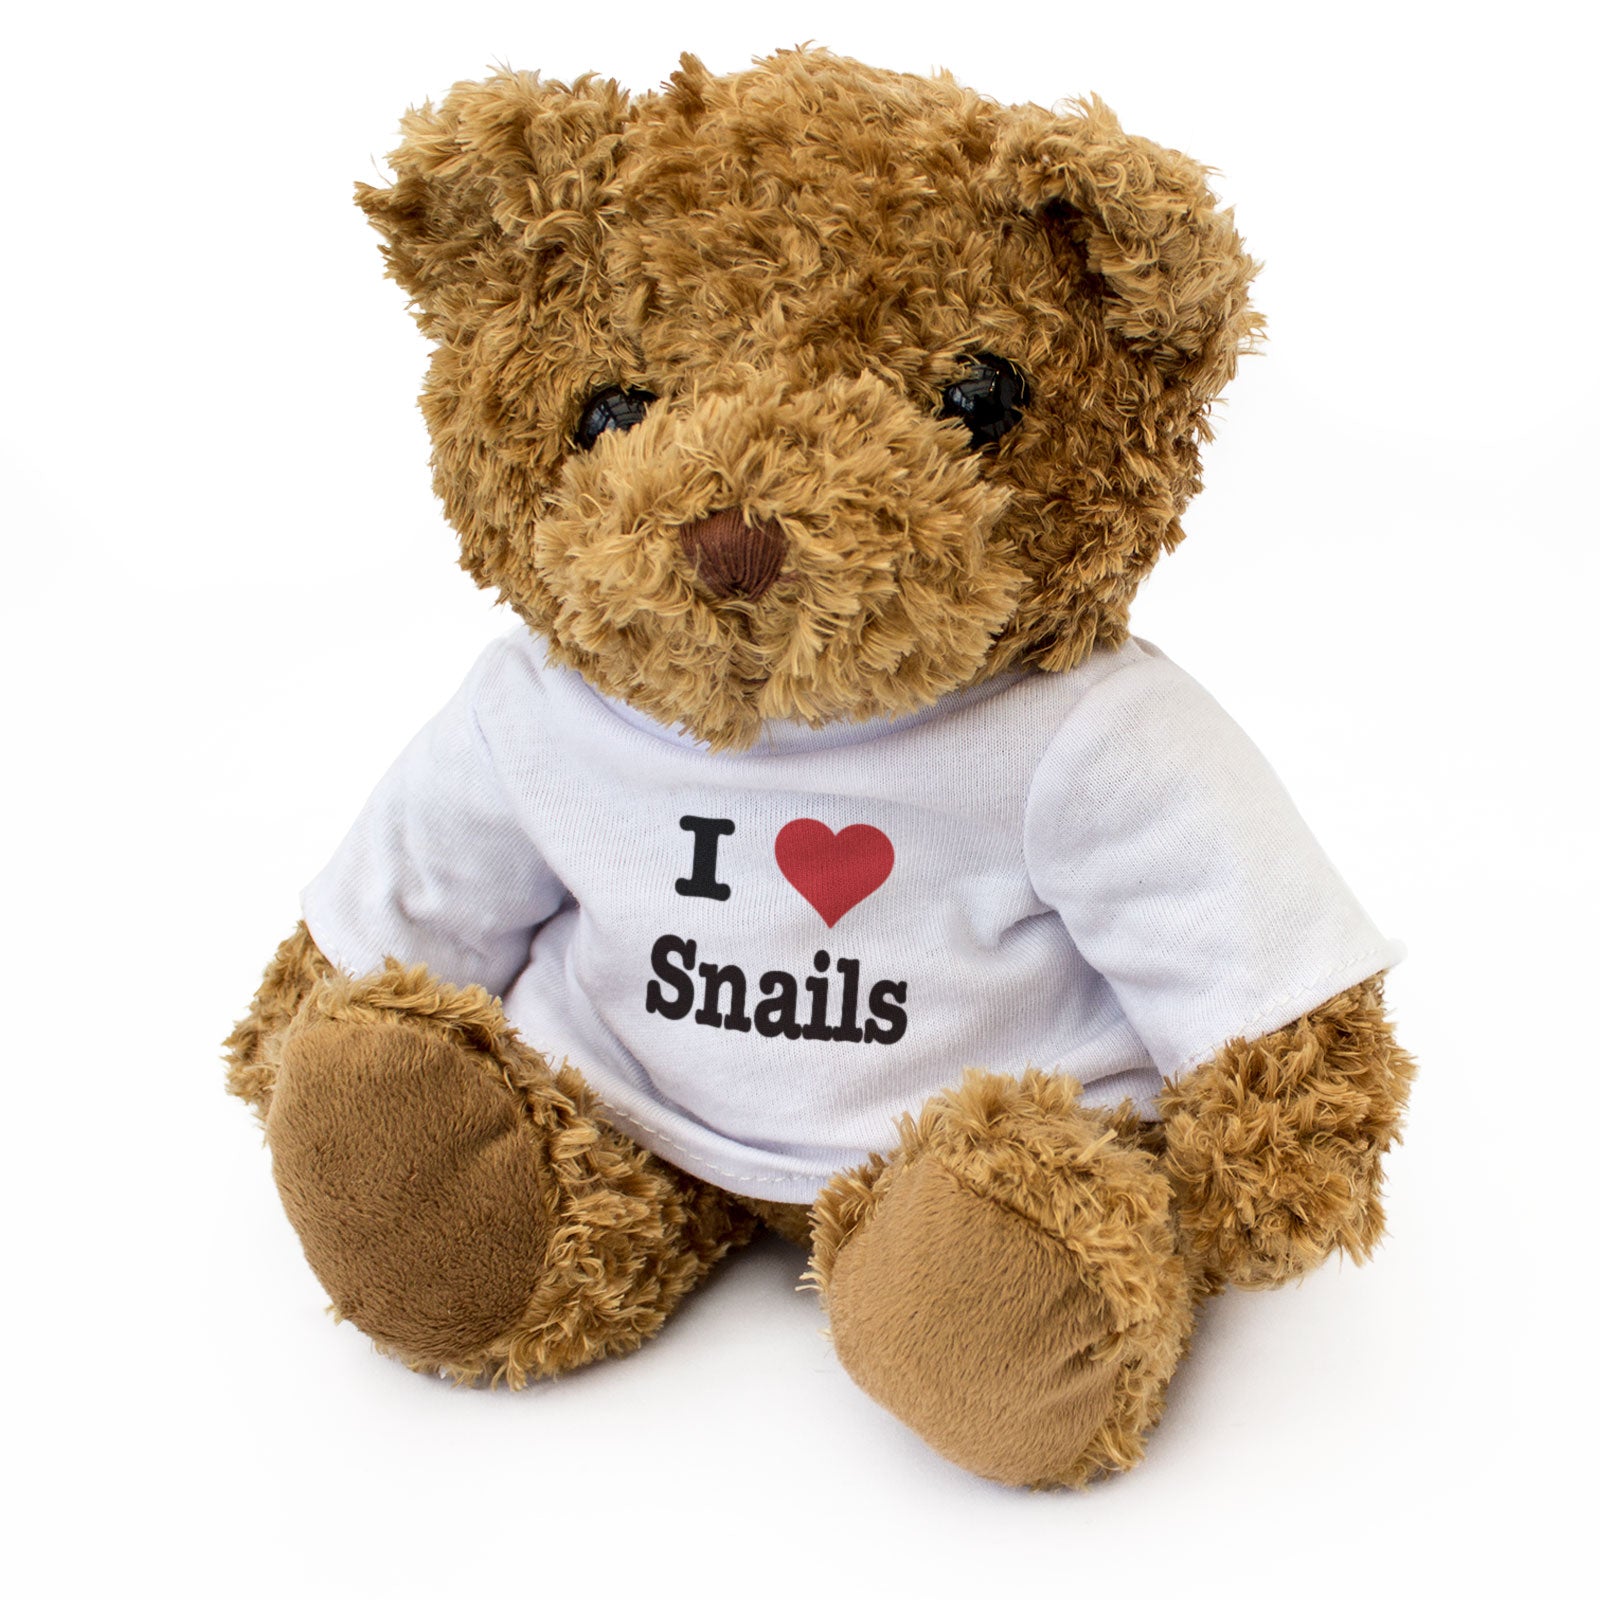 I Love Snails - Teddy Bear